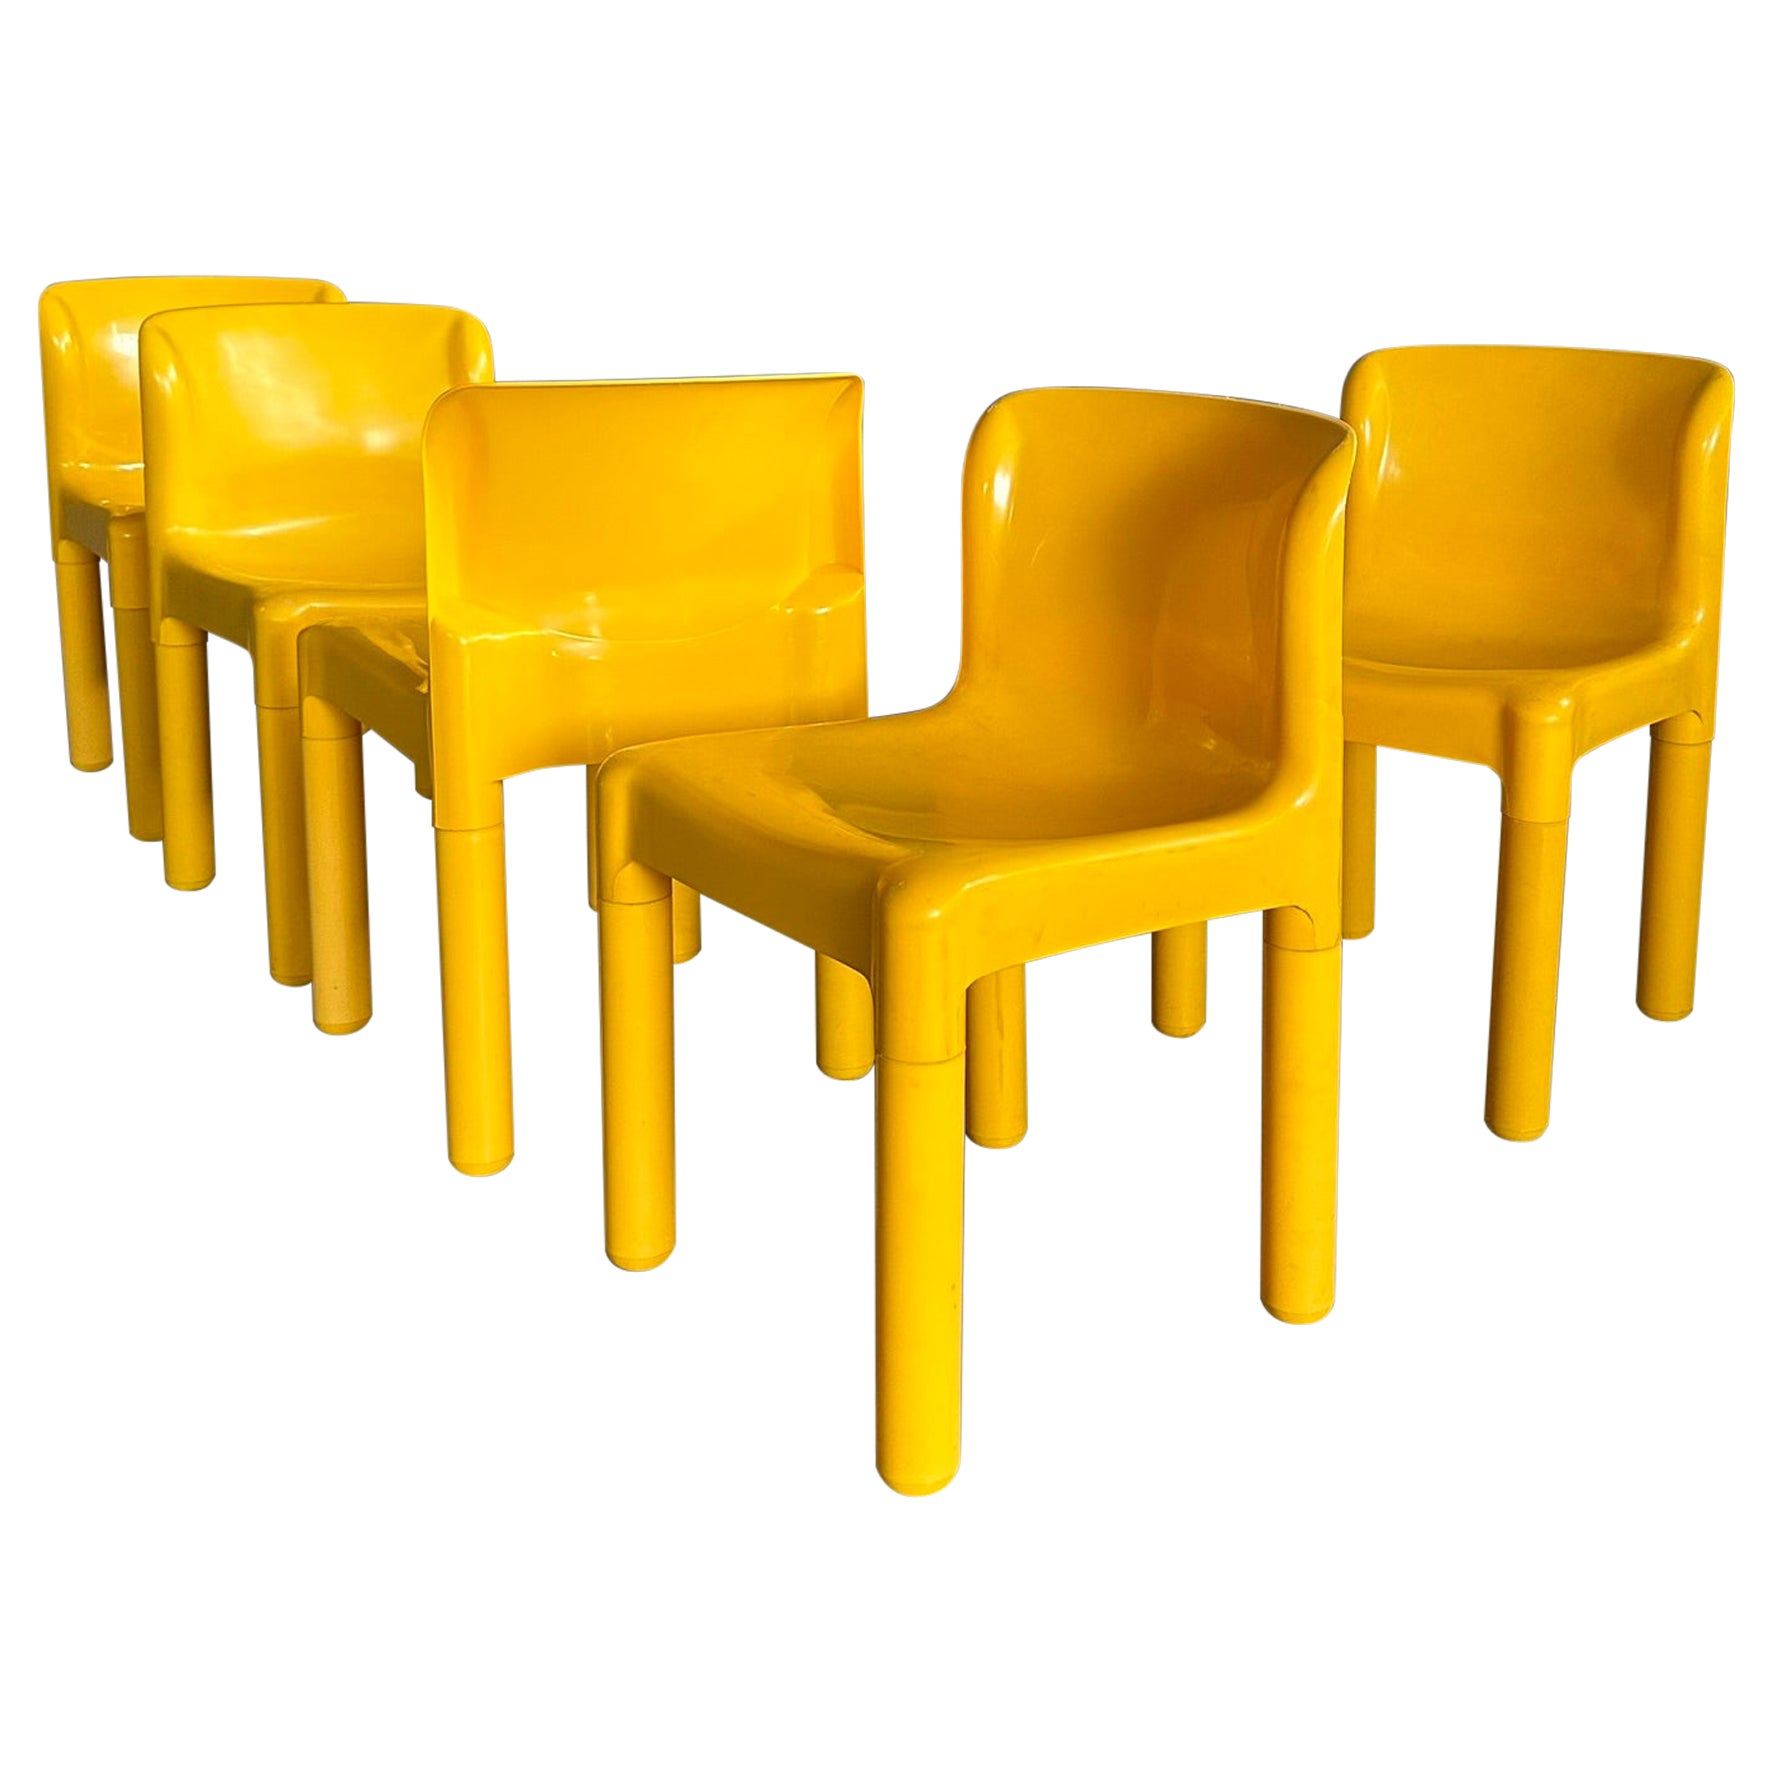 Set aus 5 gelben, hellen Stühlen mod. 4875, entworfen von Carlo Bartoli für Kartell 